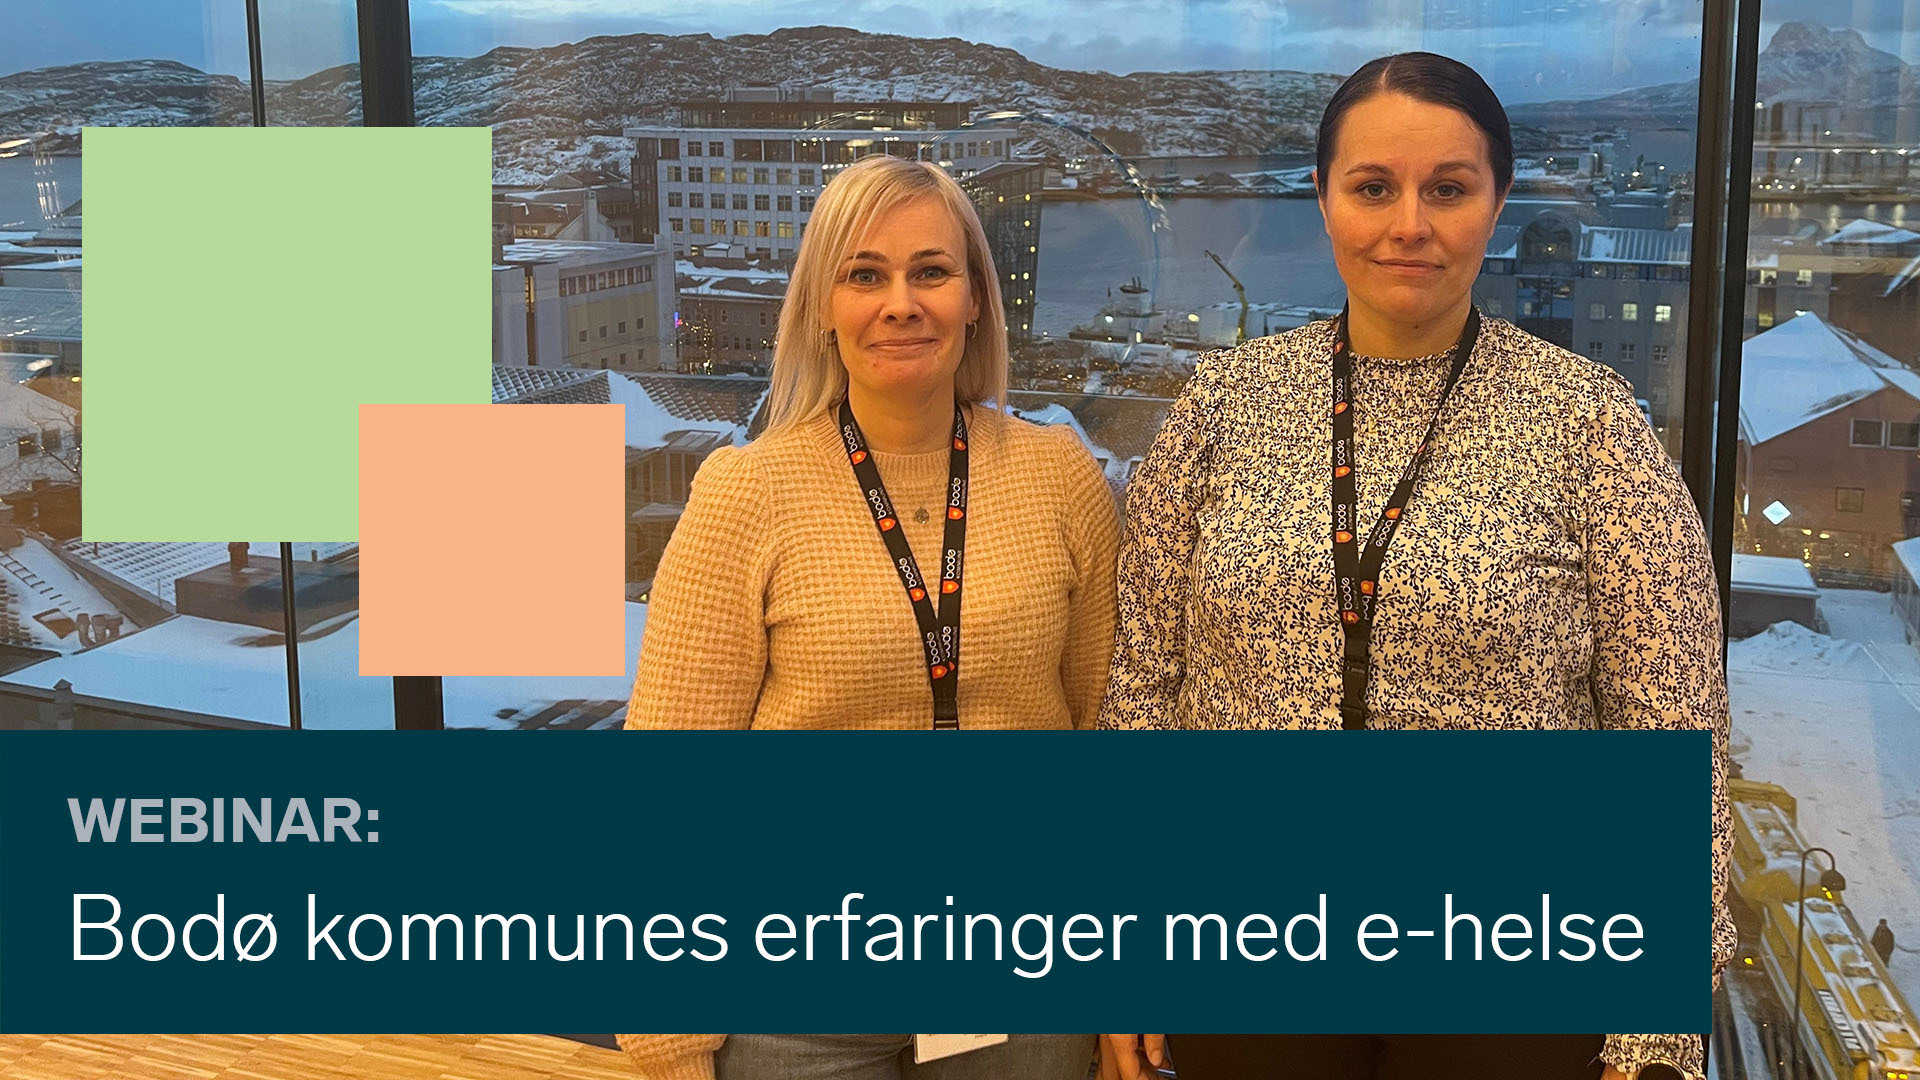 Anette Skogstad og Vibeke Tellmann delte erfaringer fra Bodø kommune angående velferdsteknologi og e-helse.